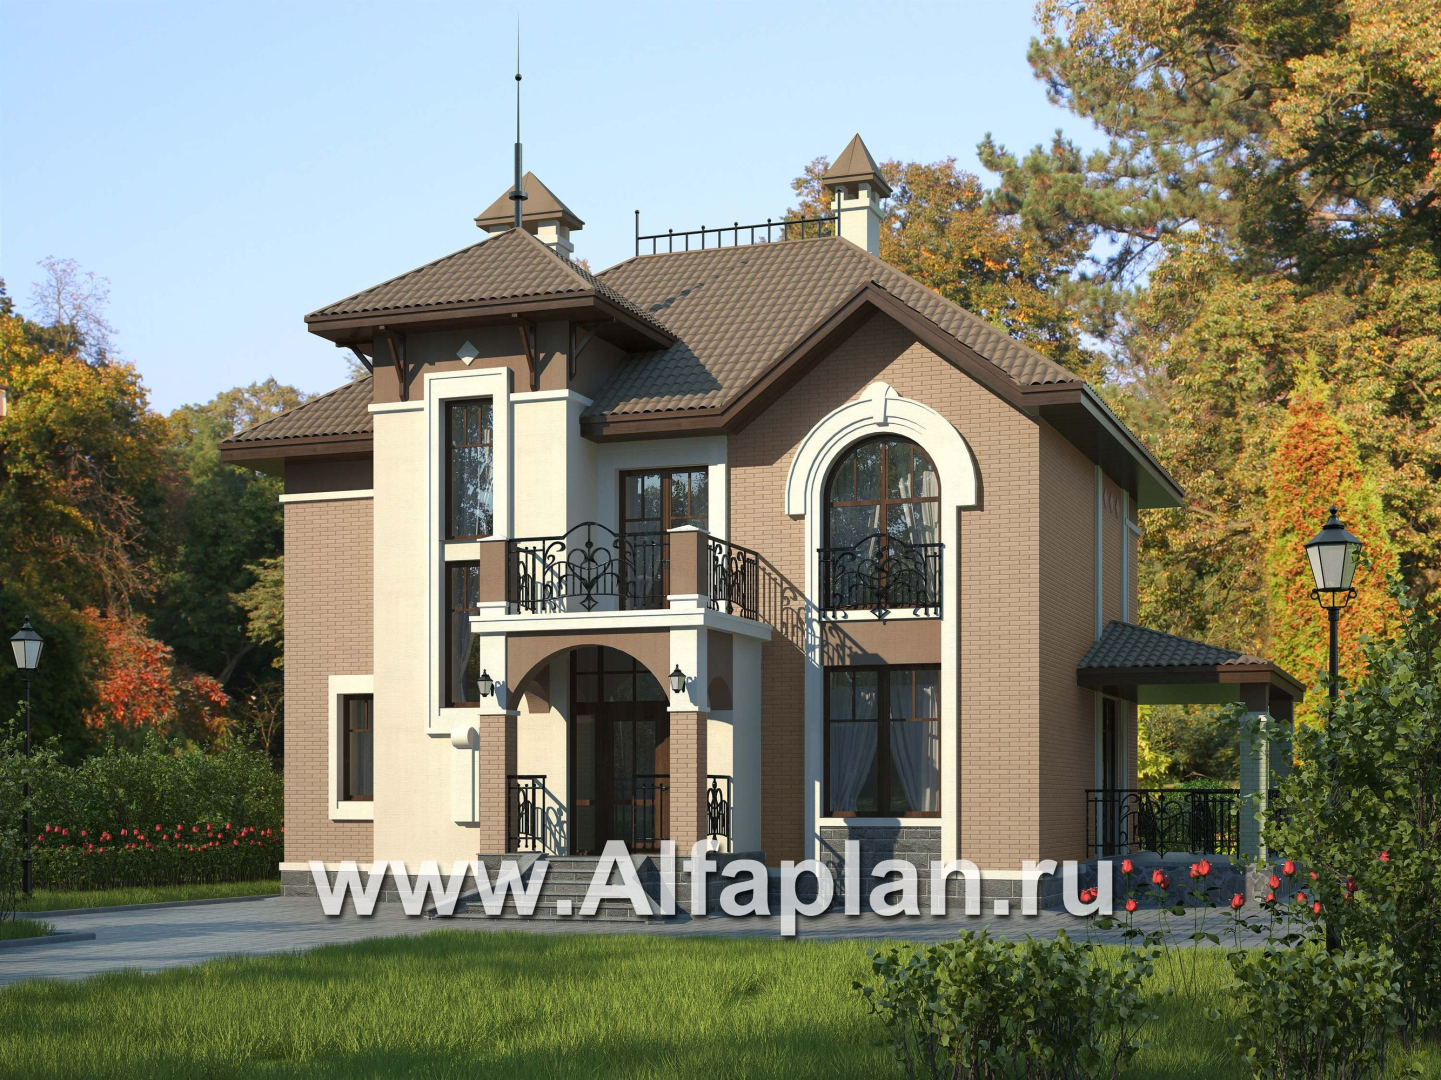 Проекты домов Альфаплан - «Разумовский» - красивый коттедж с элементами стиля модерн - основное изображение